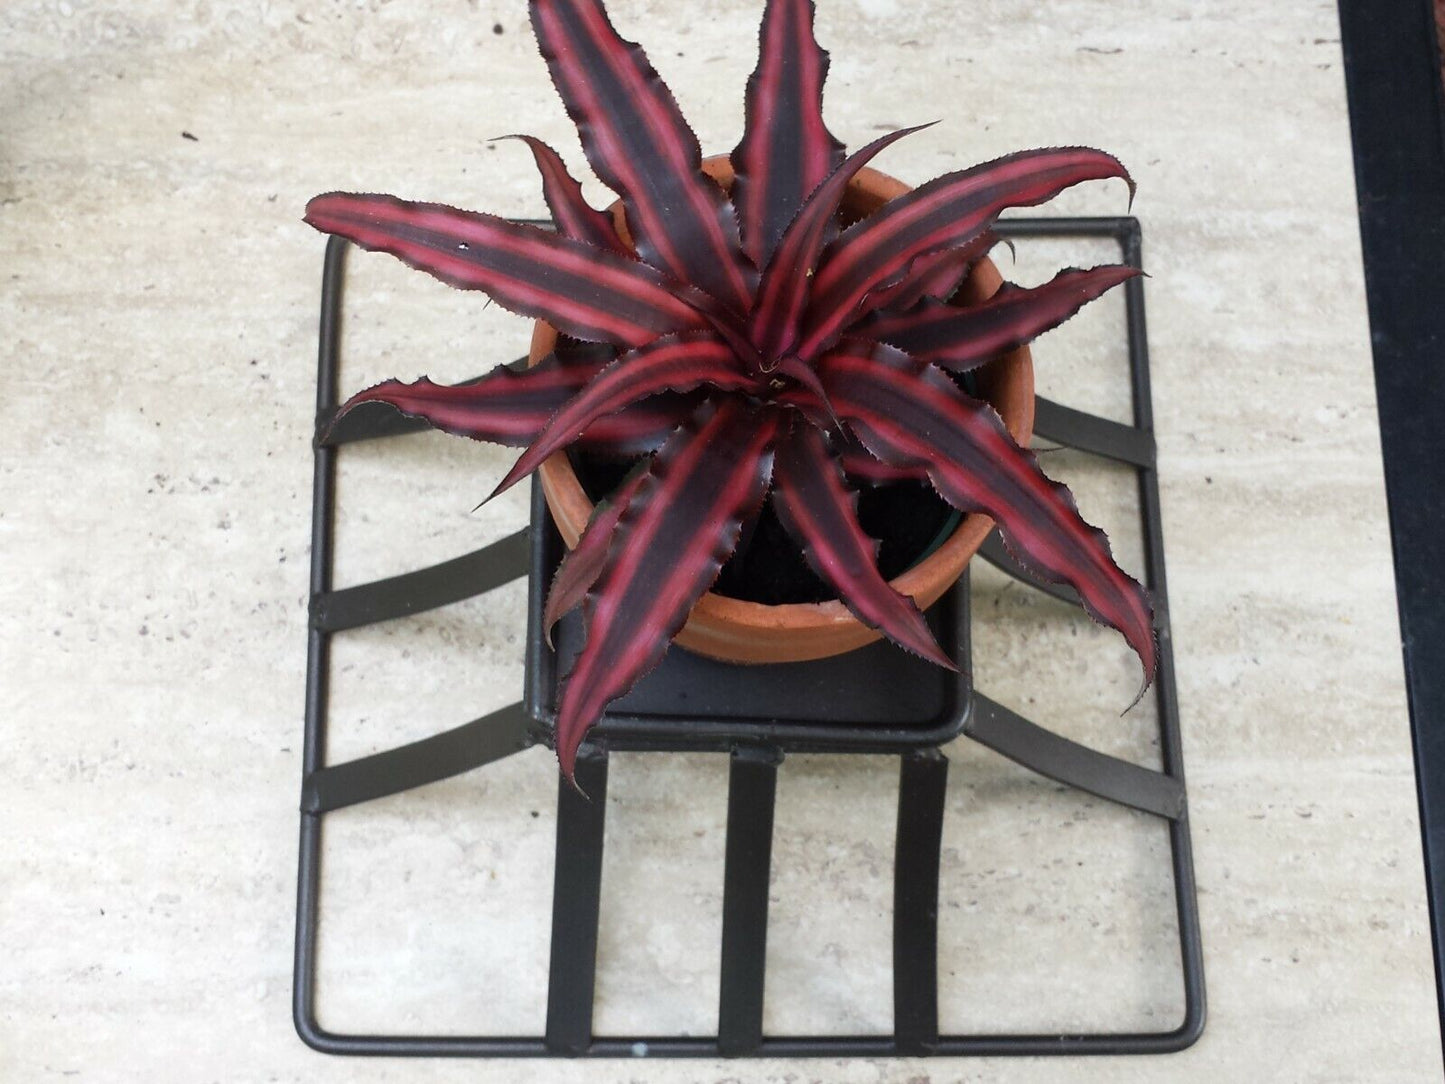 Vintage Metal Wire Basket plant stand desk table decor fruit basket gift